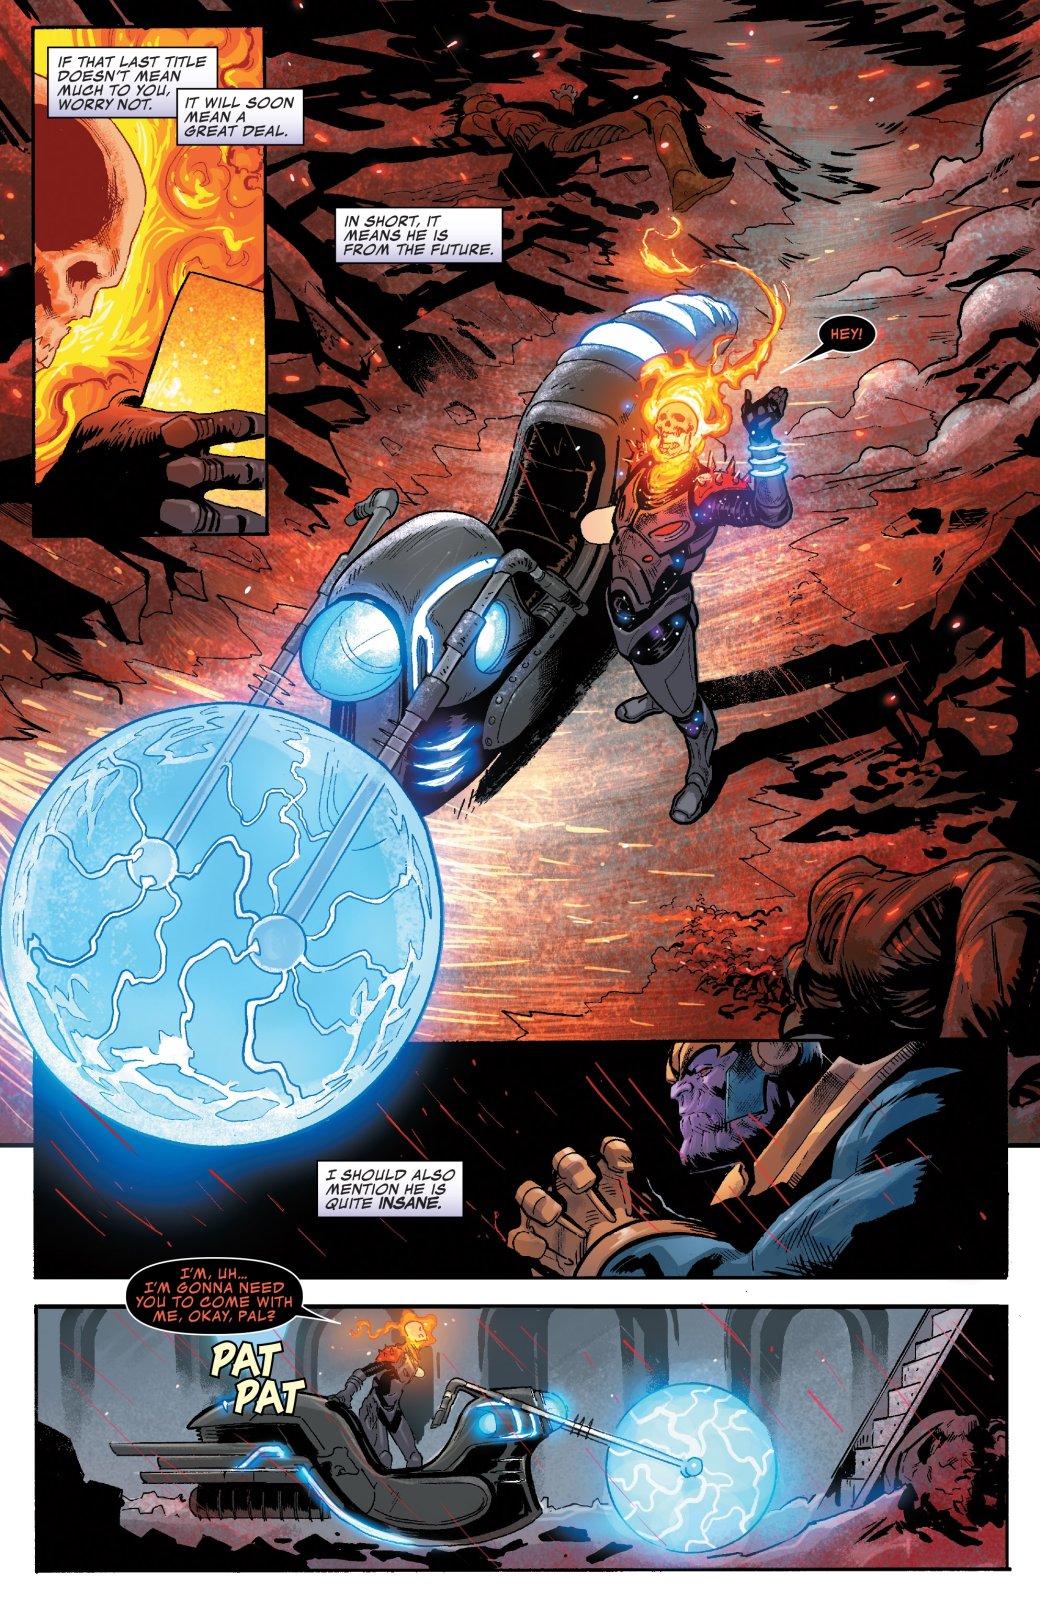 В комиксе про Таноса появился Призрачный гонщик из будущего, и, похоже, мы знаем кто он. - Изображение 3